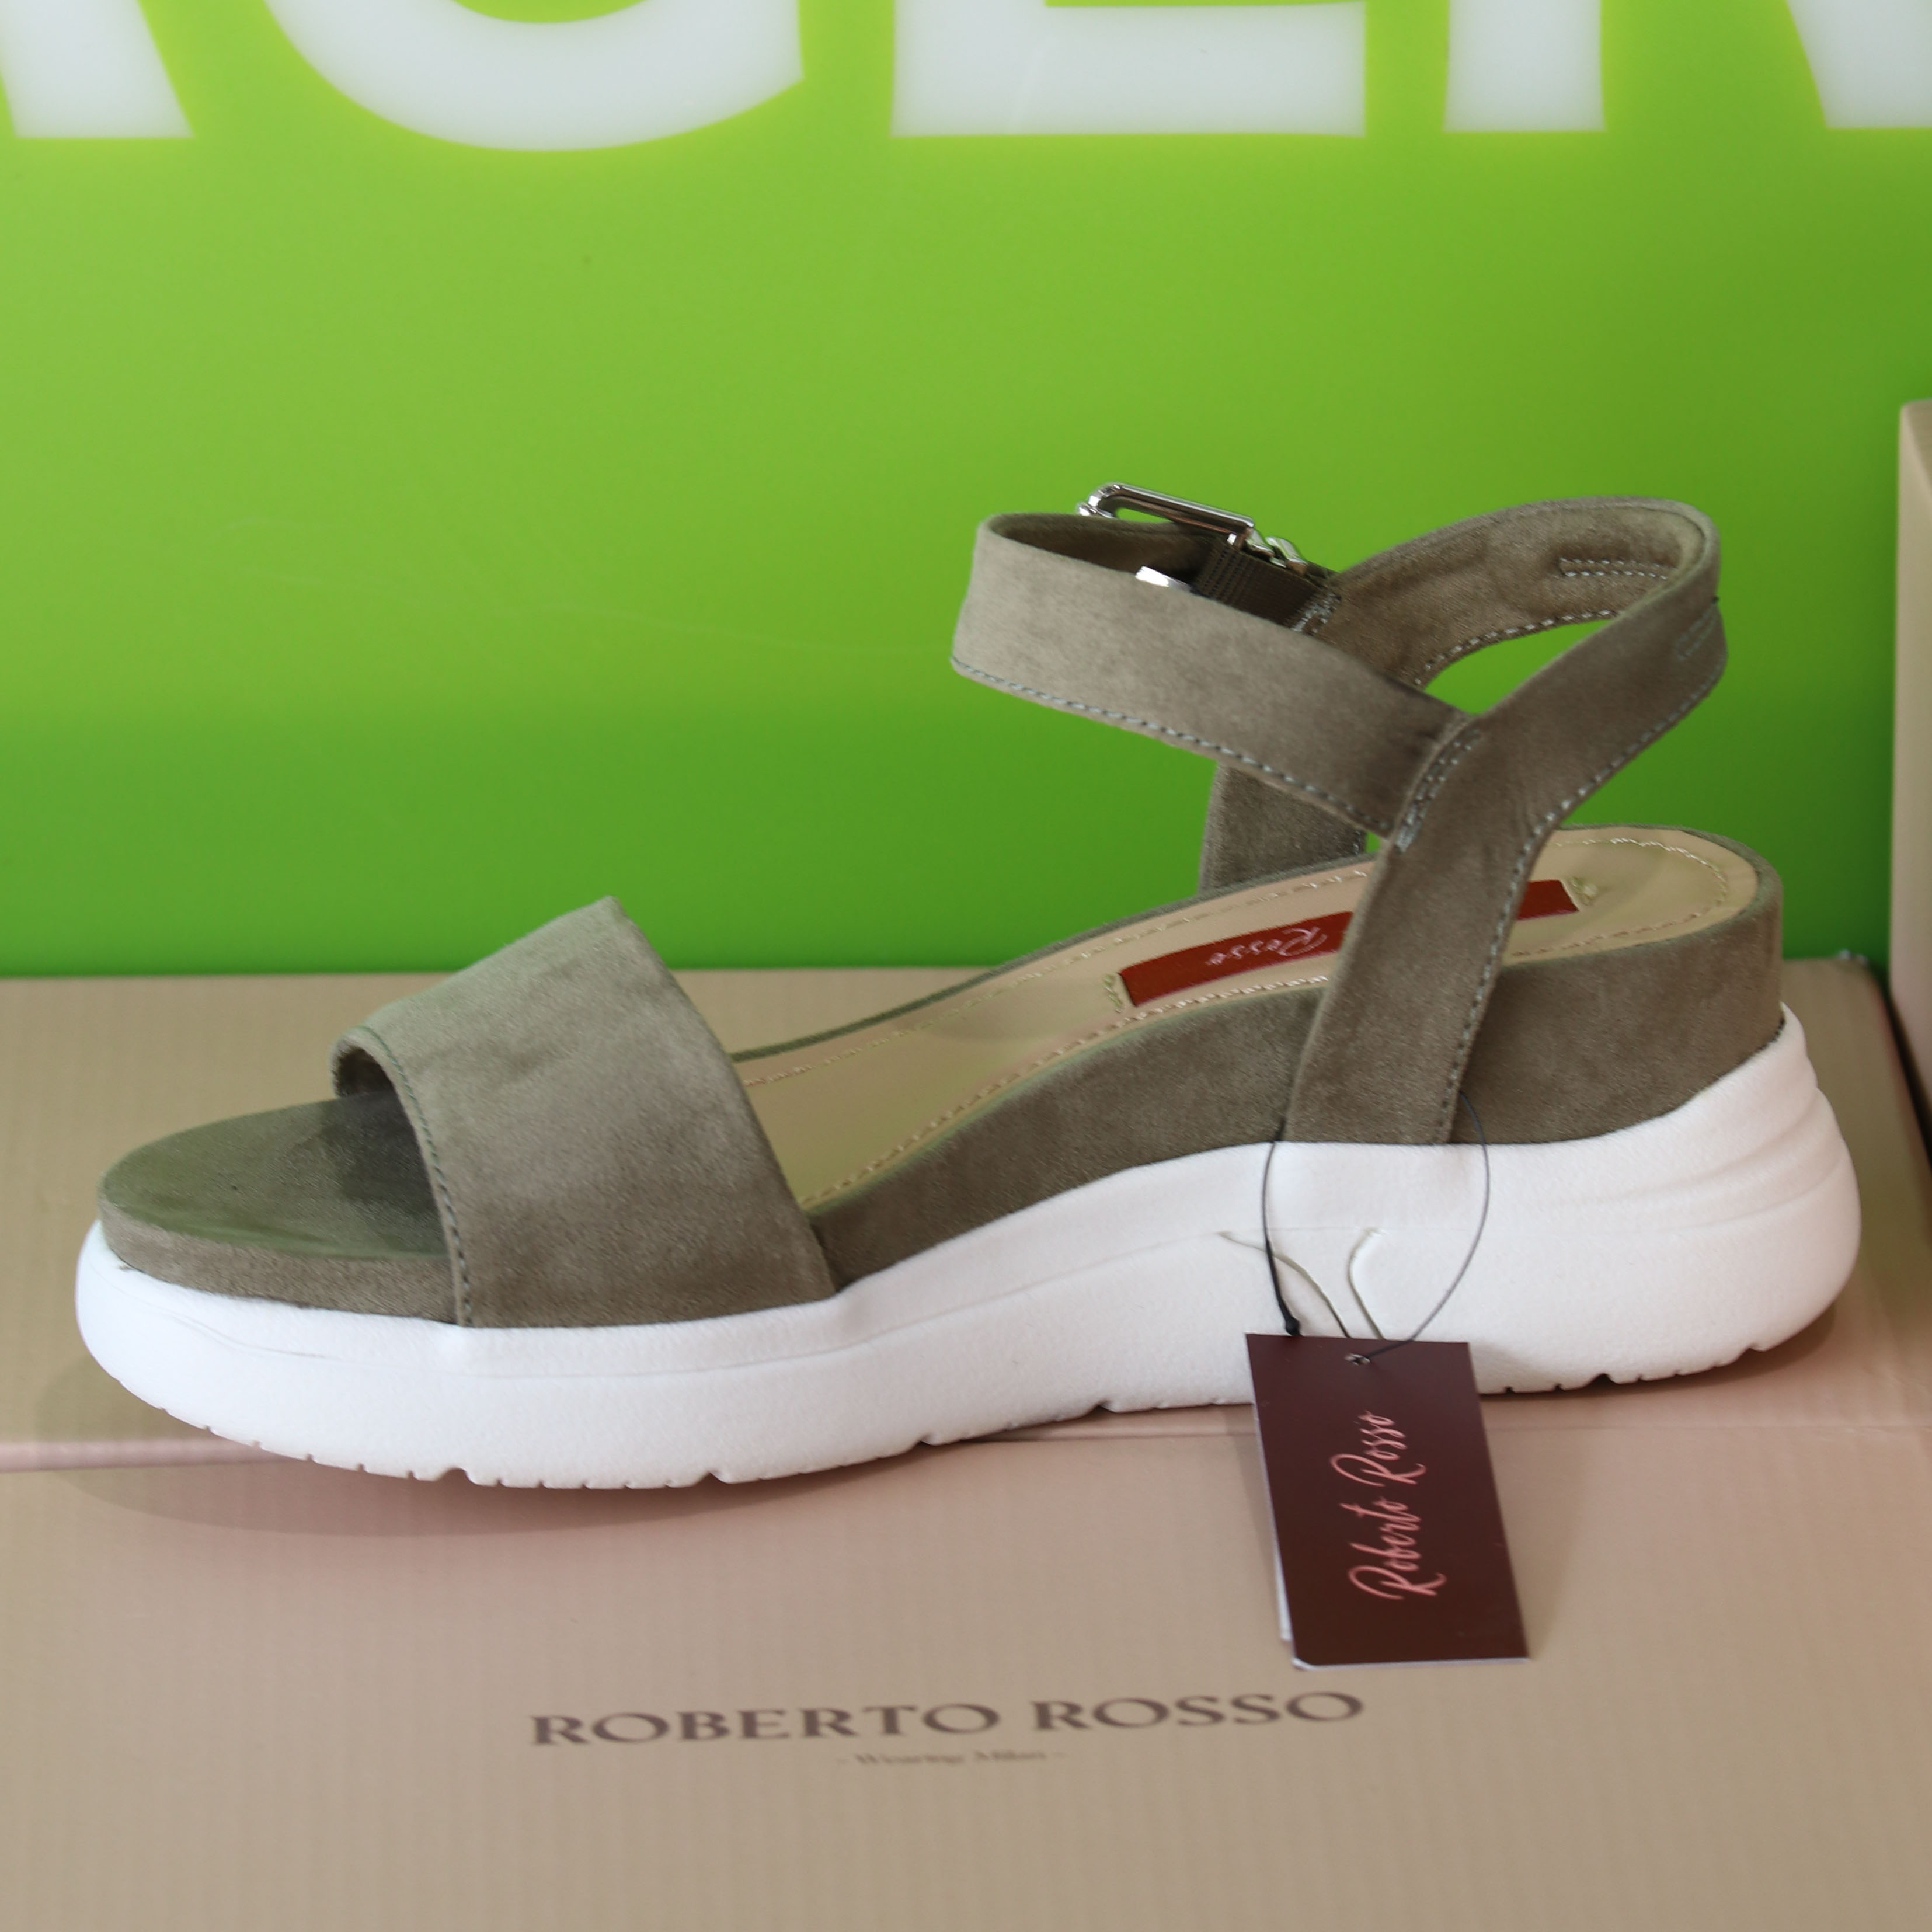 roberto rosso – akkira green sandal grønn sommer dame9